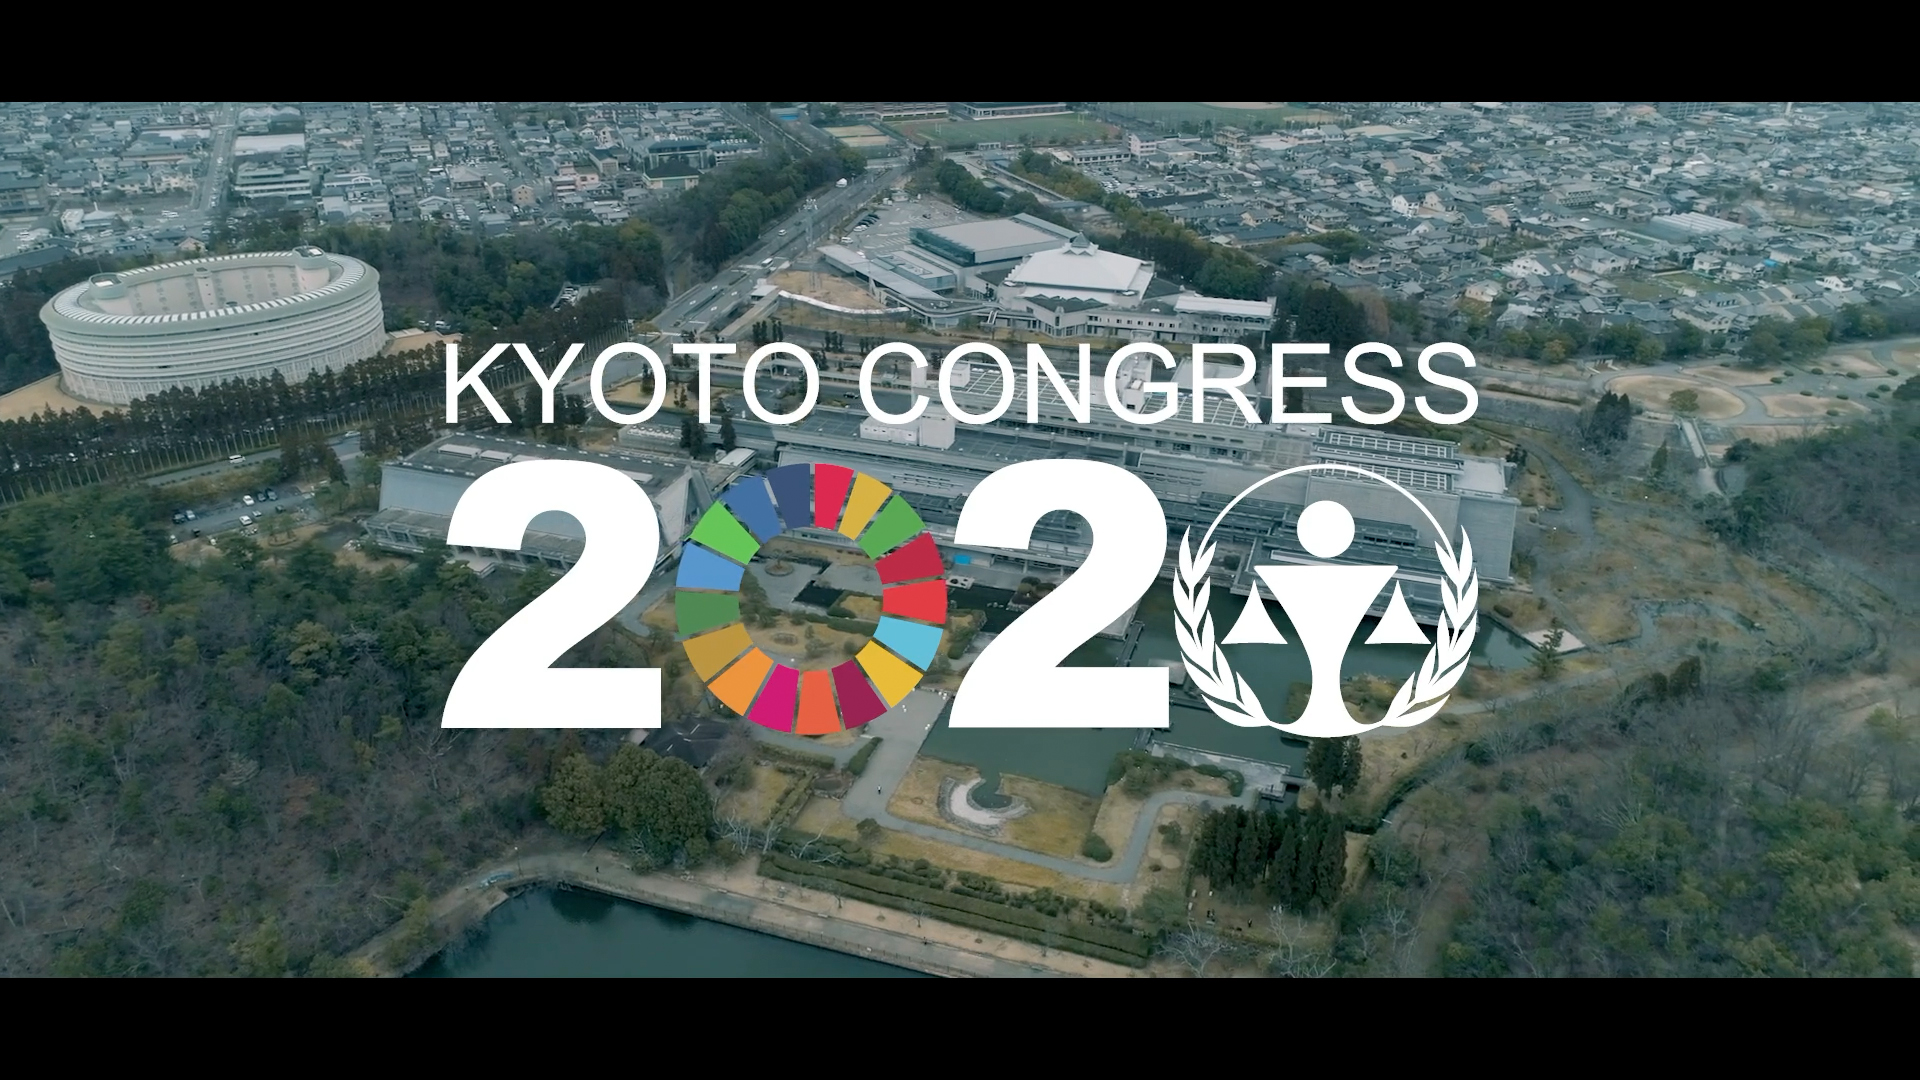 KYOTO CONGRESS 2020